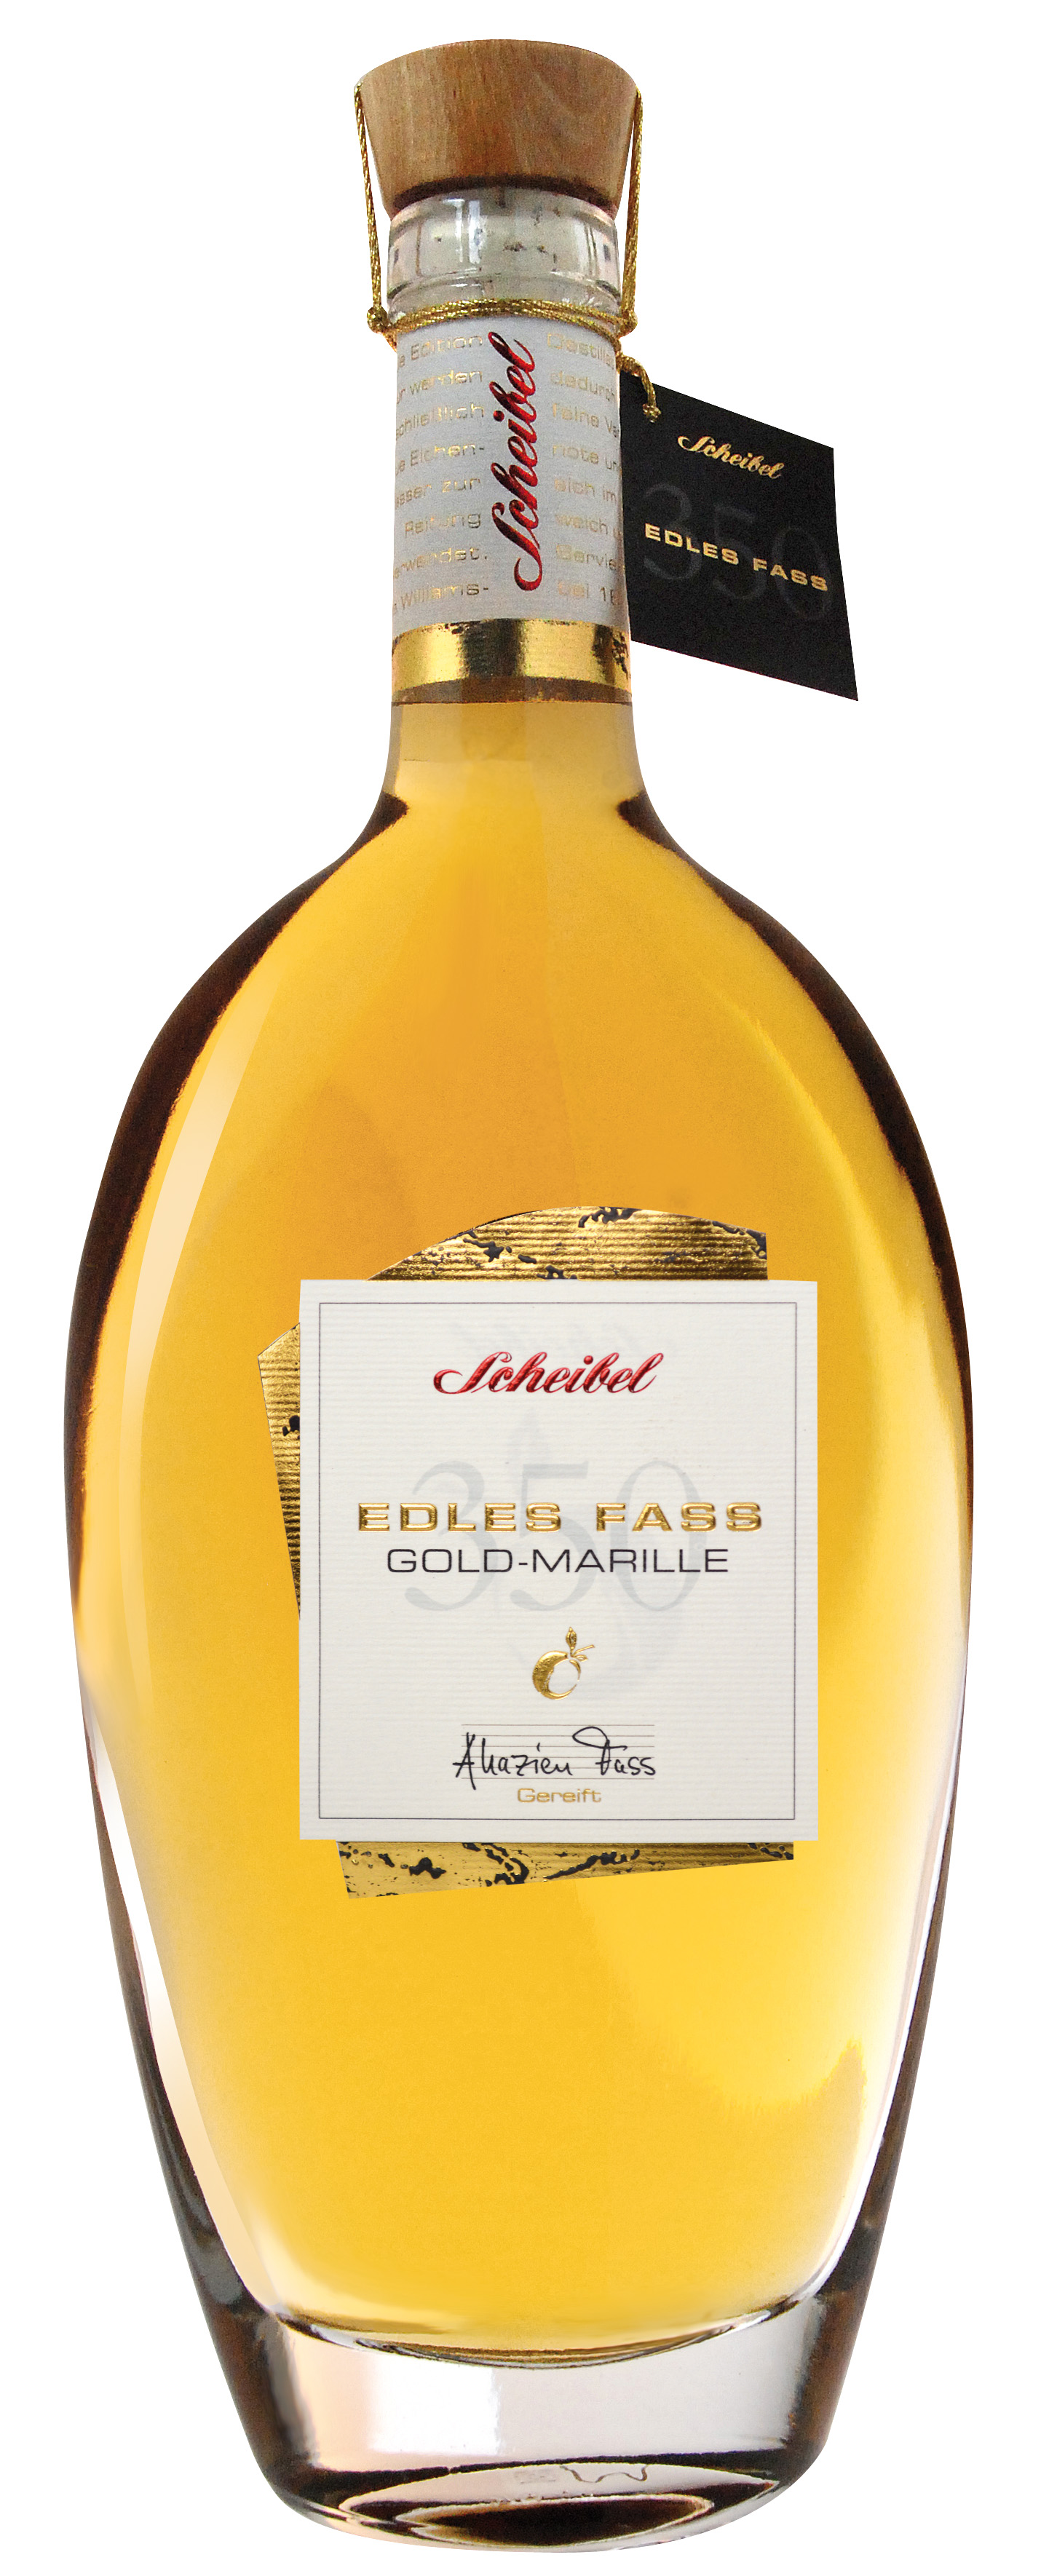 Scheibel Gold-Marille Edles Fass 350 41% Vol.